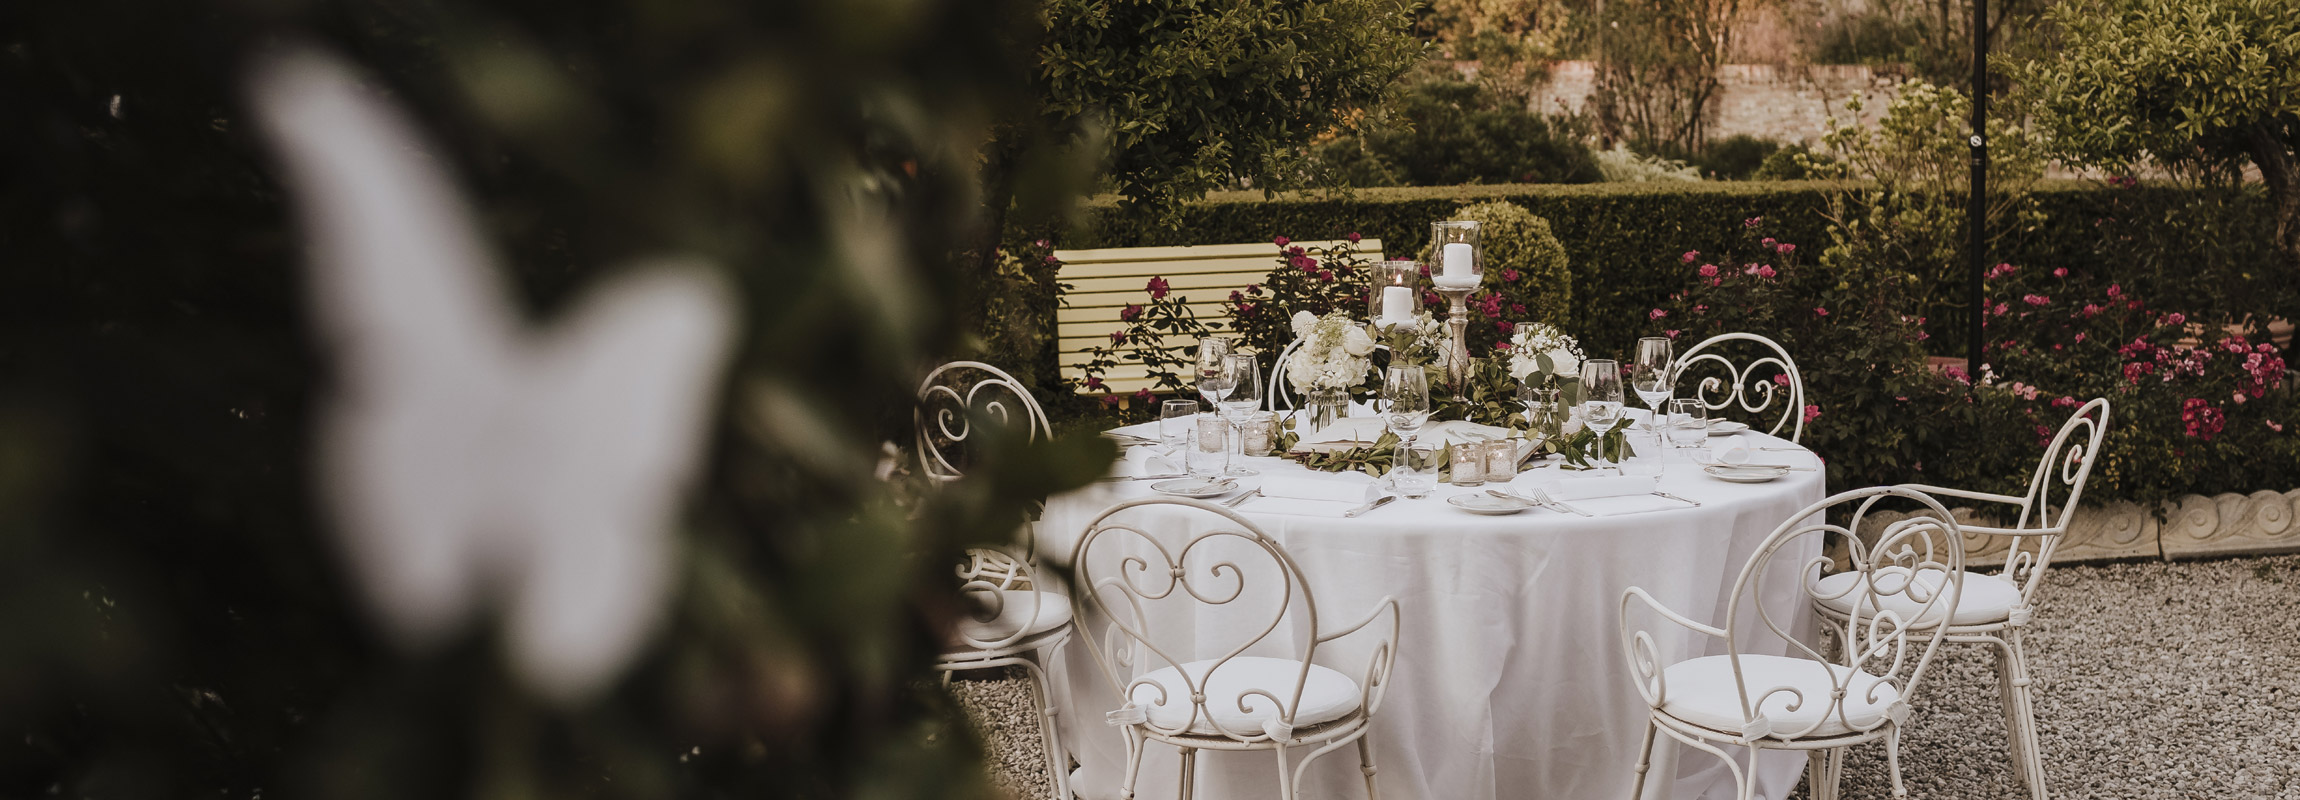 Matrimonio a Venezia: una mise en place romantica nel giardino della Locanda Cipriani a Torcello